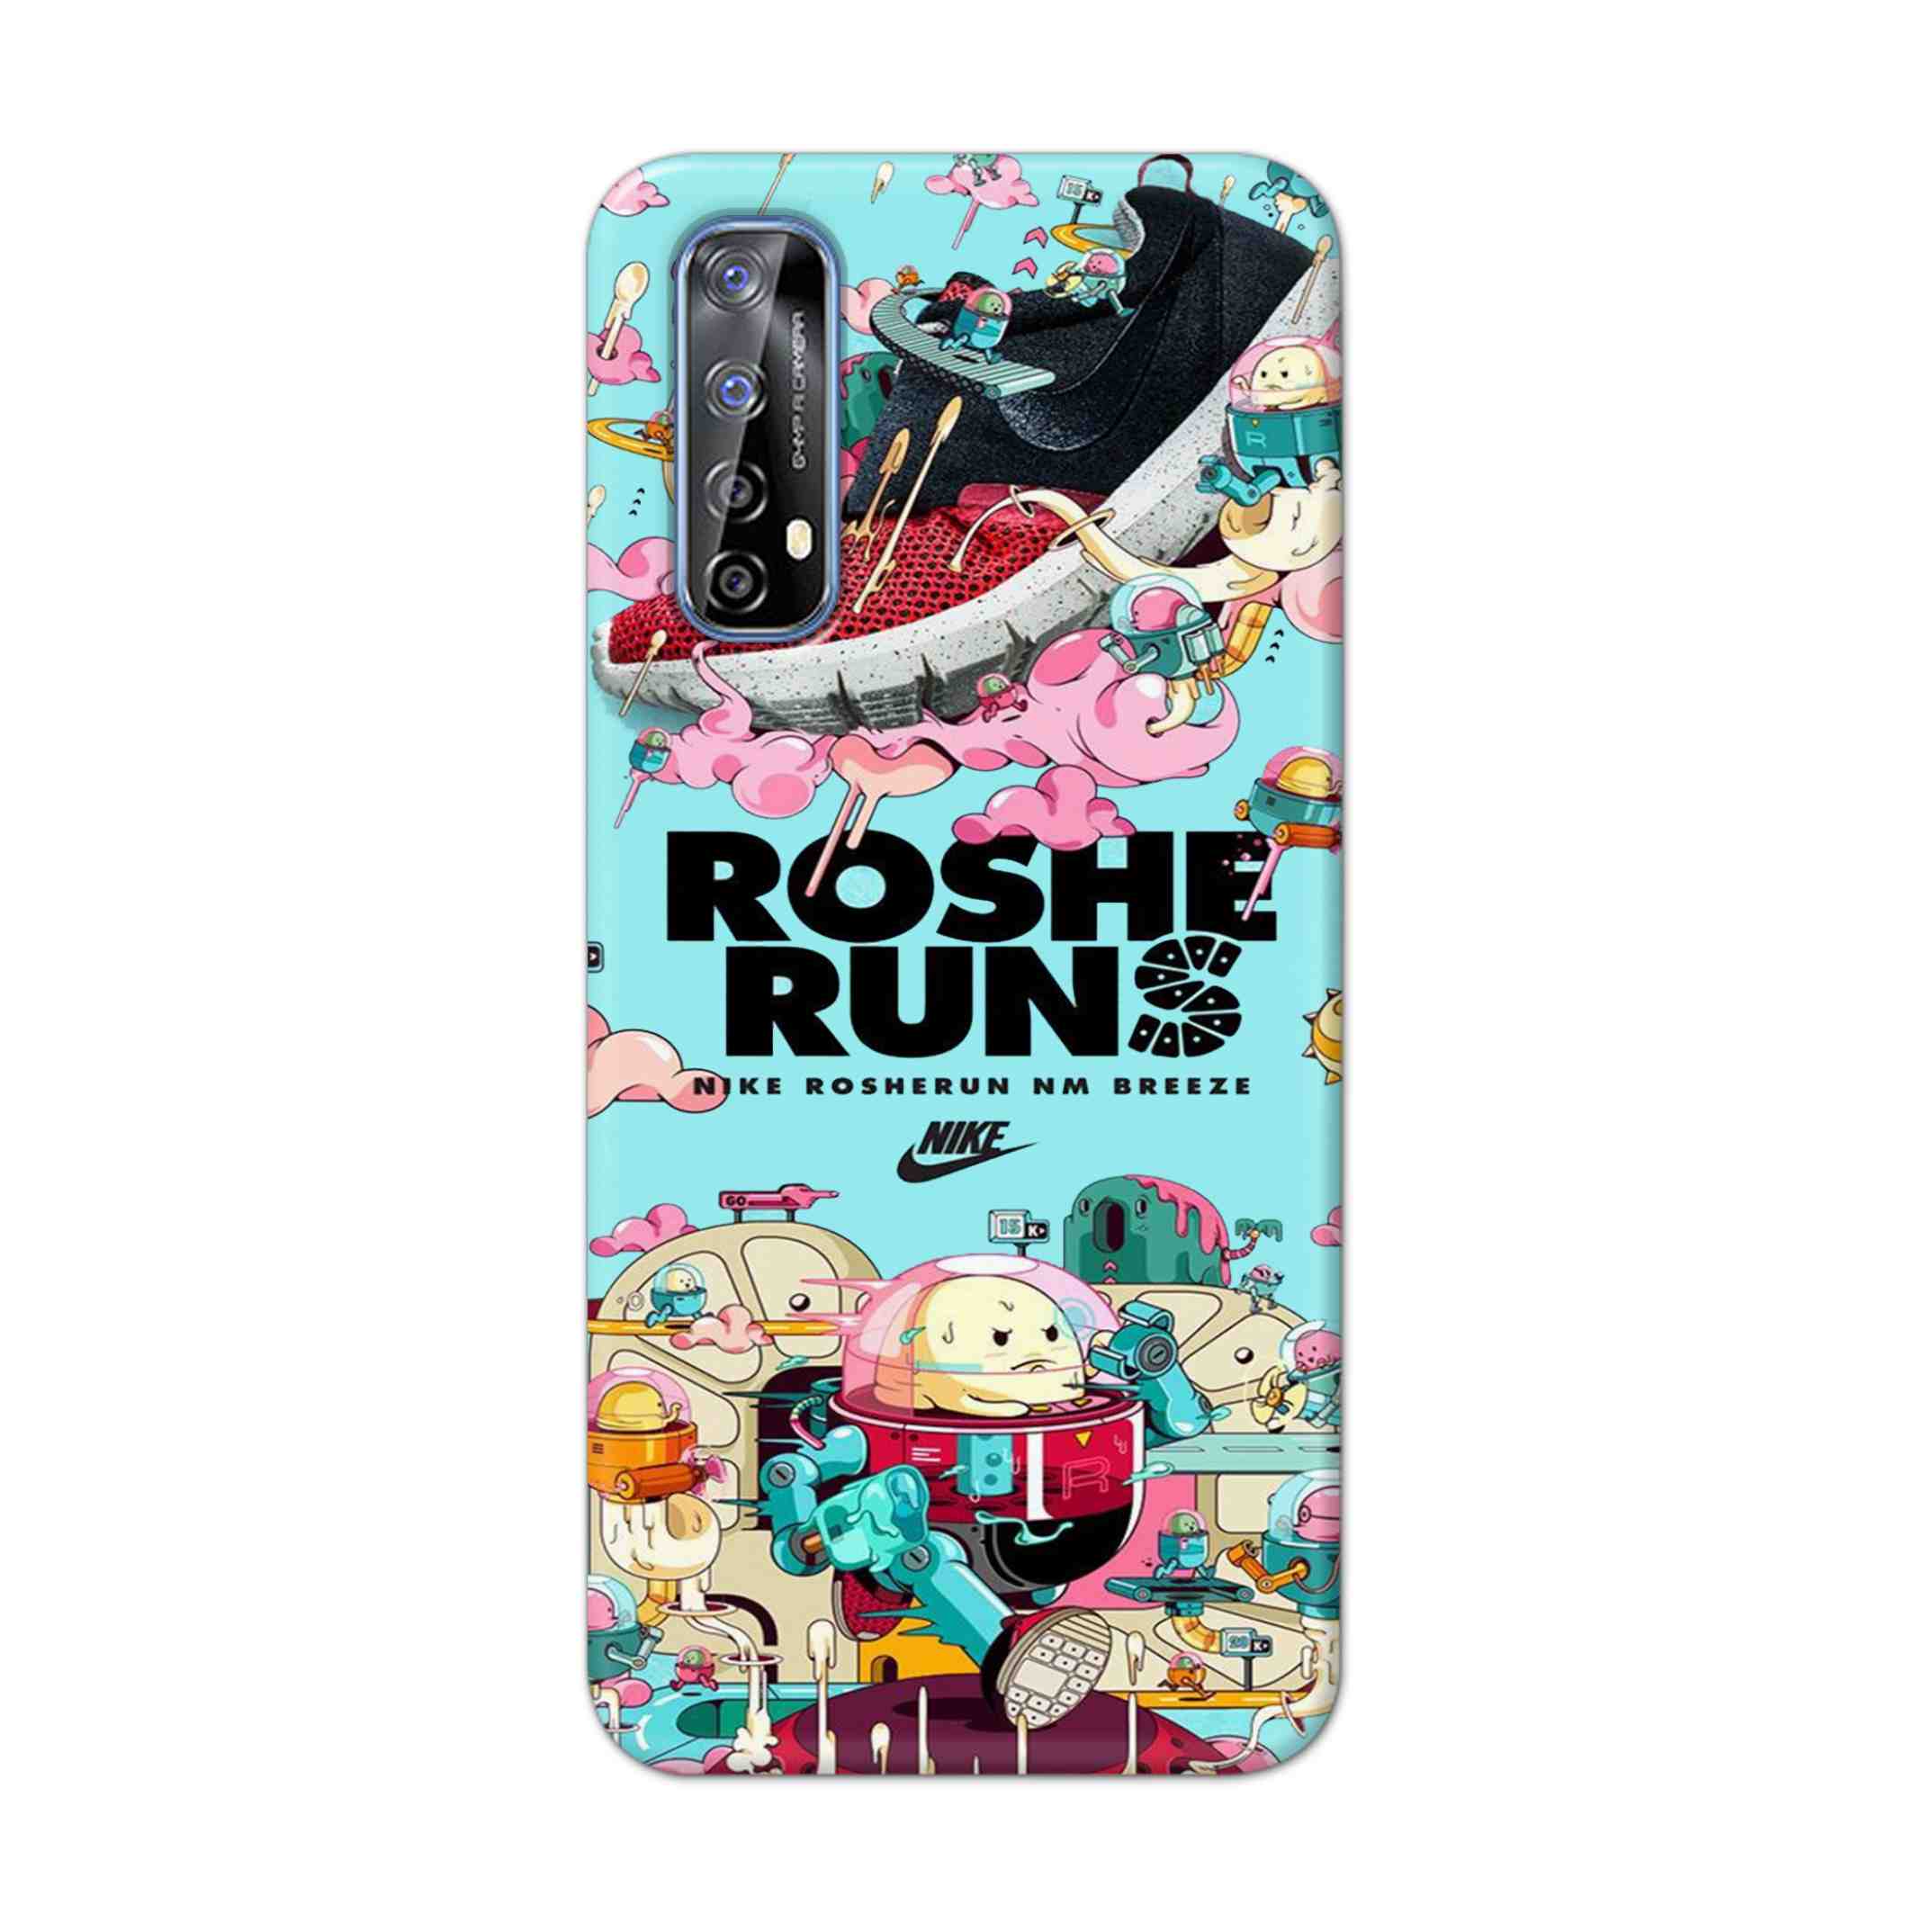 Buy Roshe Runs Hard Back Mobile Phone Case Cover For Realme 7 Online